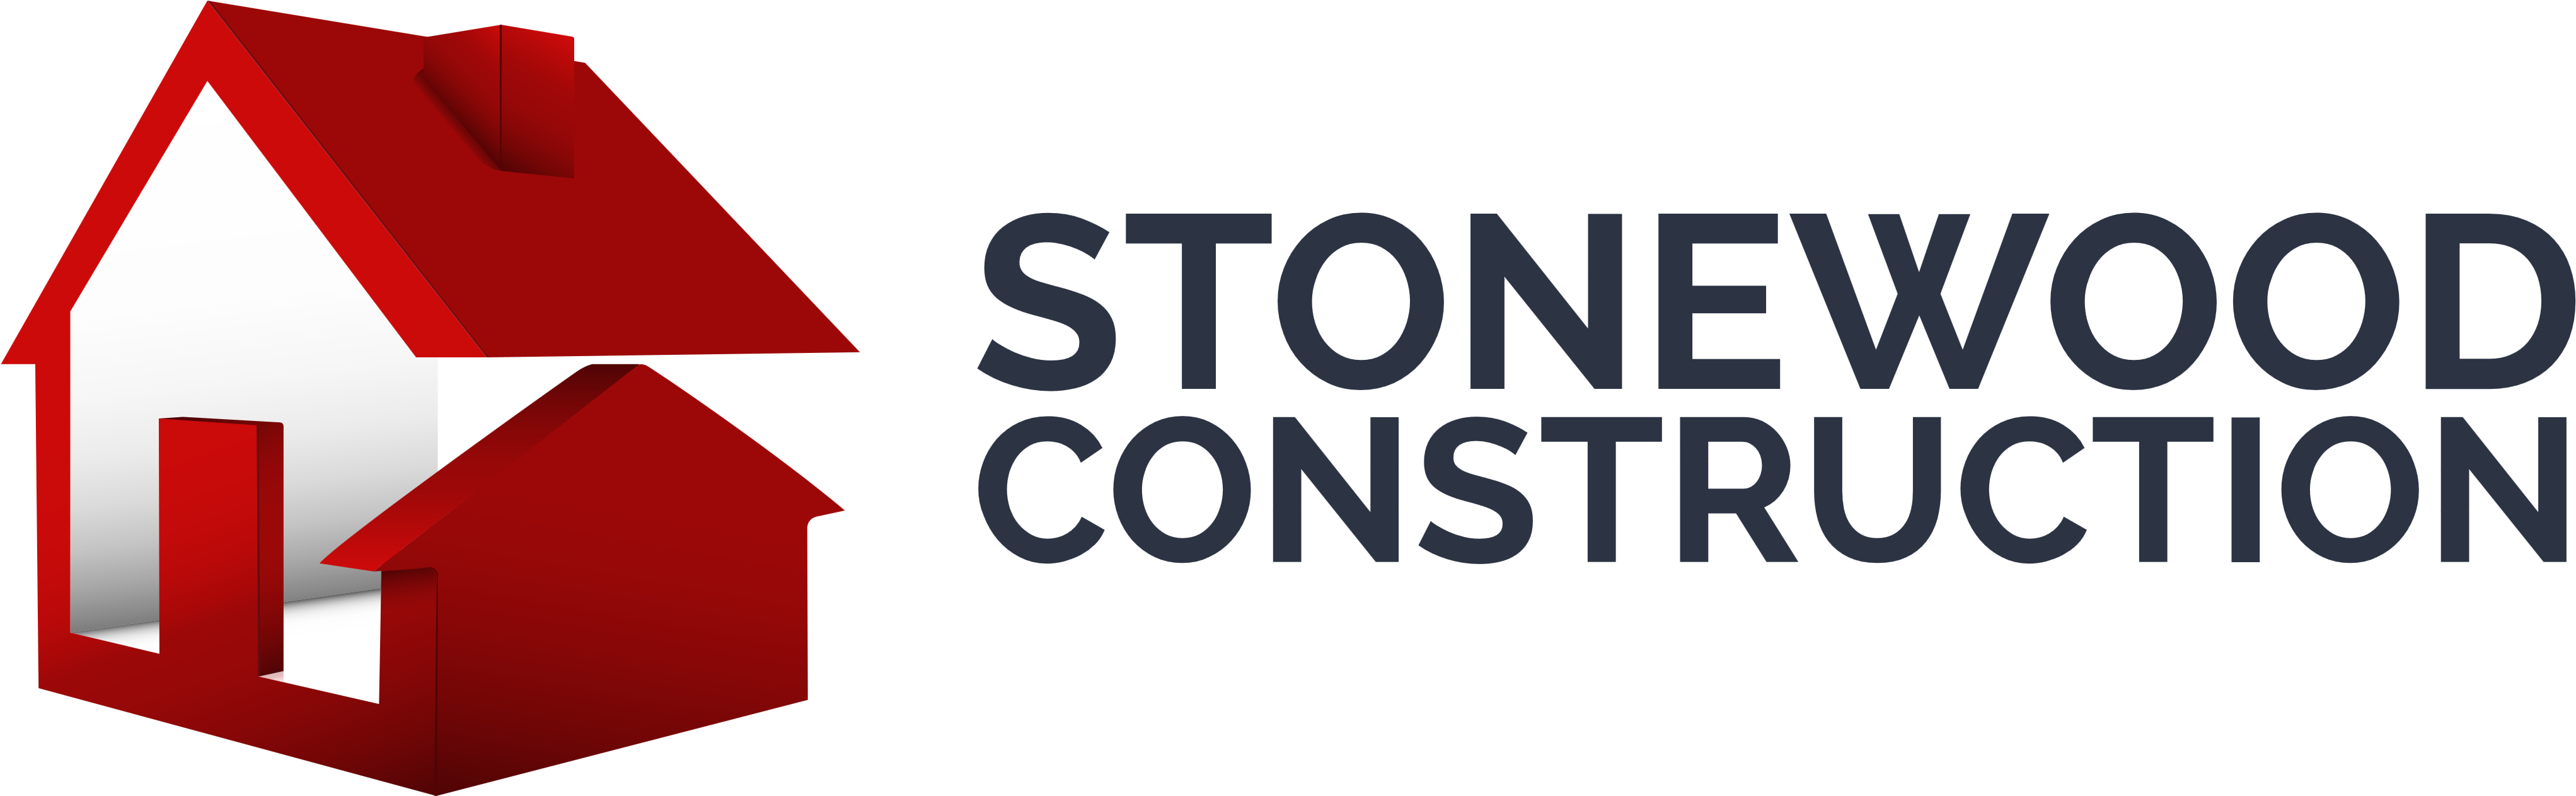 Stonewood Construction Logo PNG image